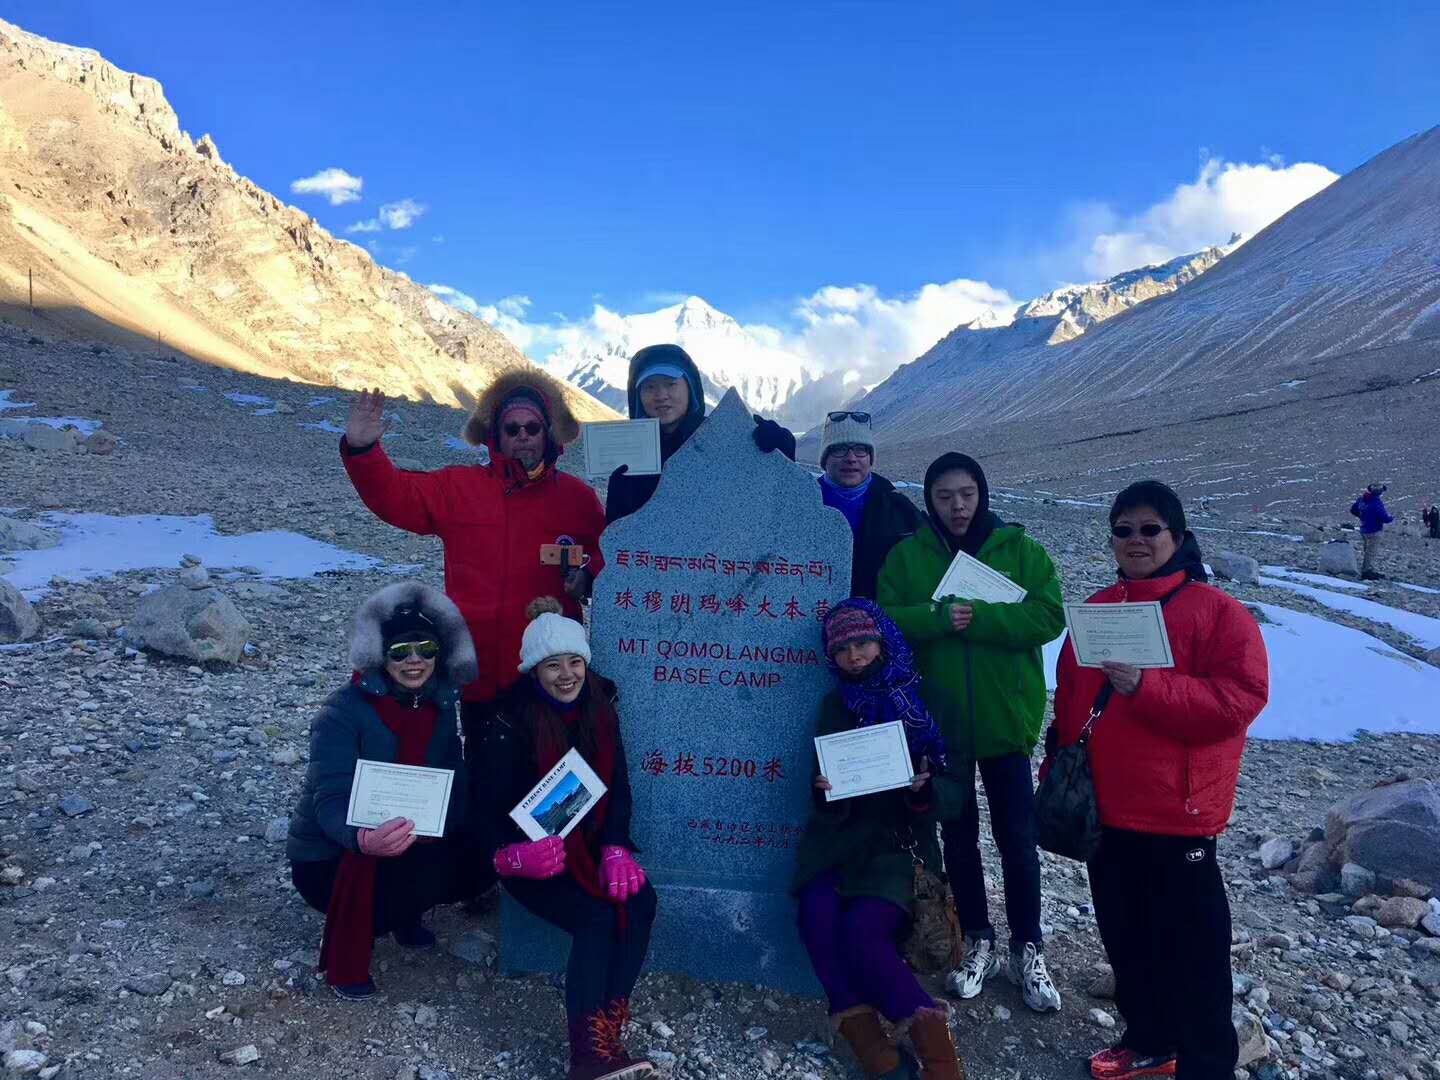 【外宾拼团5】拉萨+纳木错+羊湖、日喀则、珠穆朗玛峰10日游Lhasa  Shigatse Everest Namtso Group Tour -10 Days